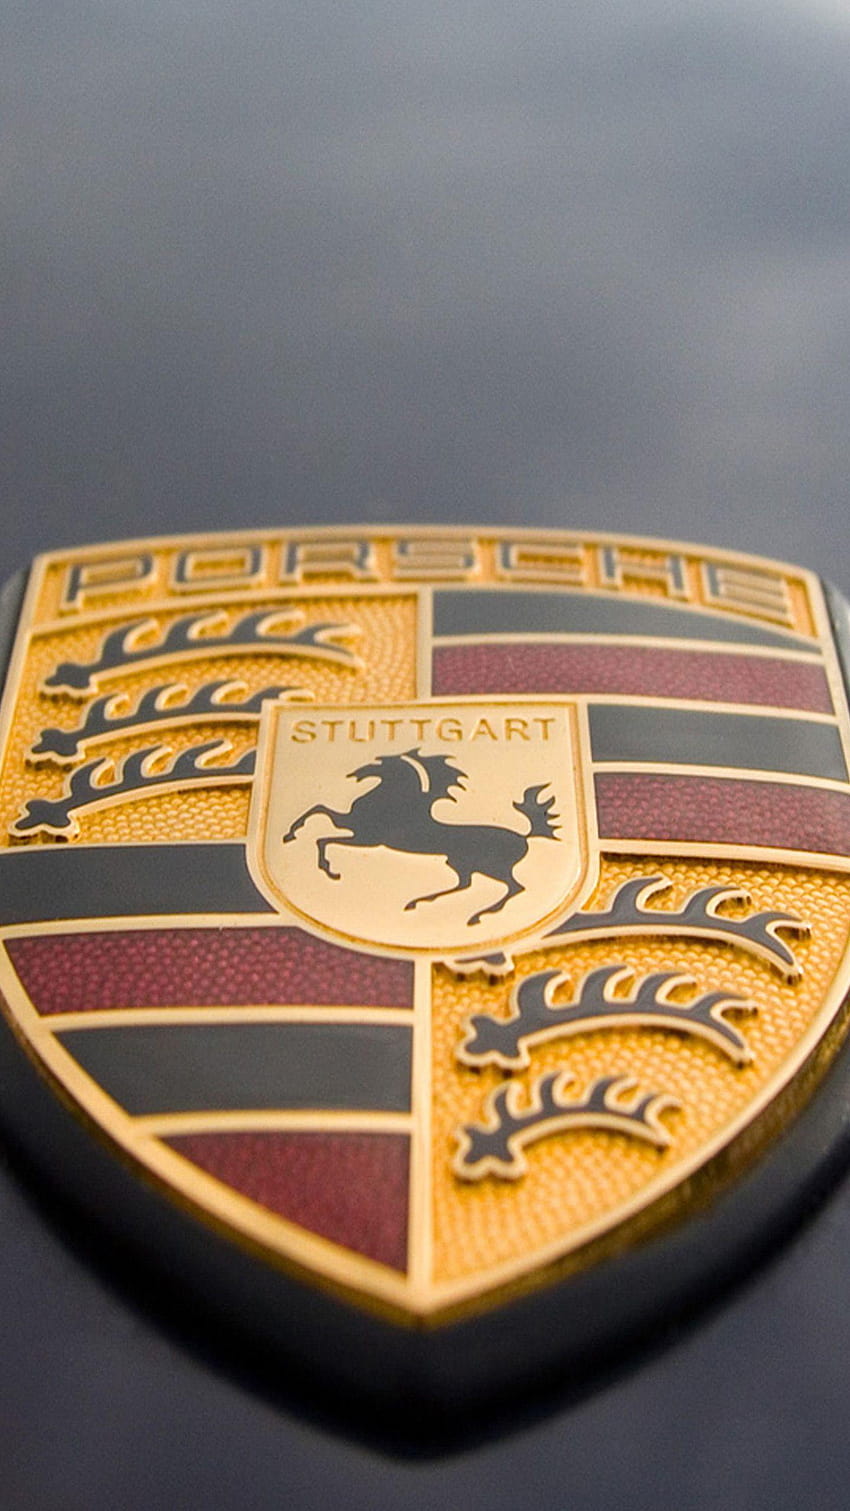 Porsche stuttgart logo for Galaxy S6.jpg, porsche logo HD phone wallpaper